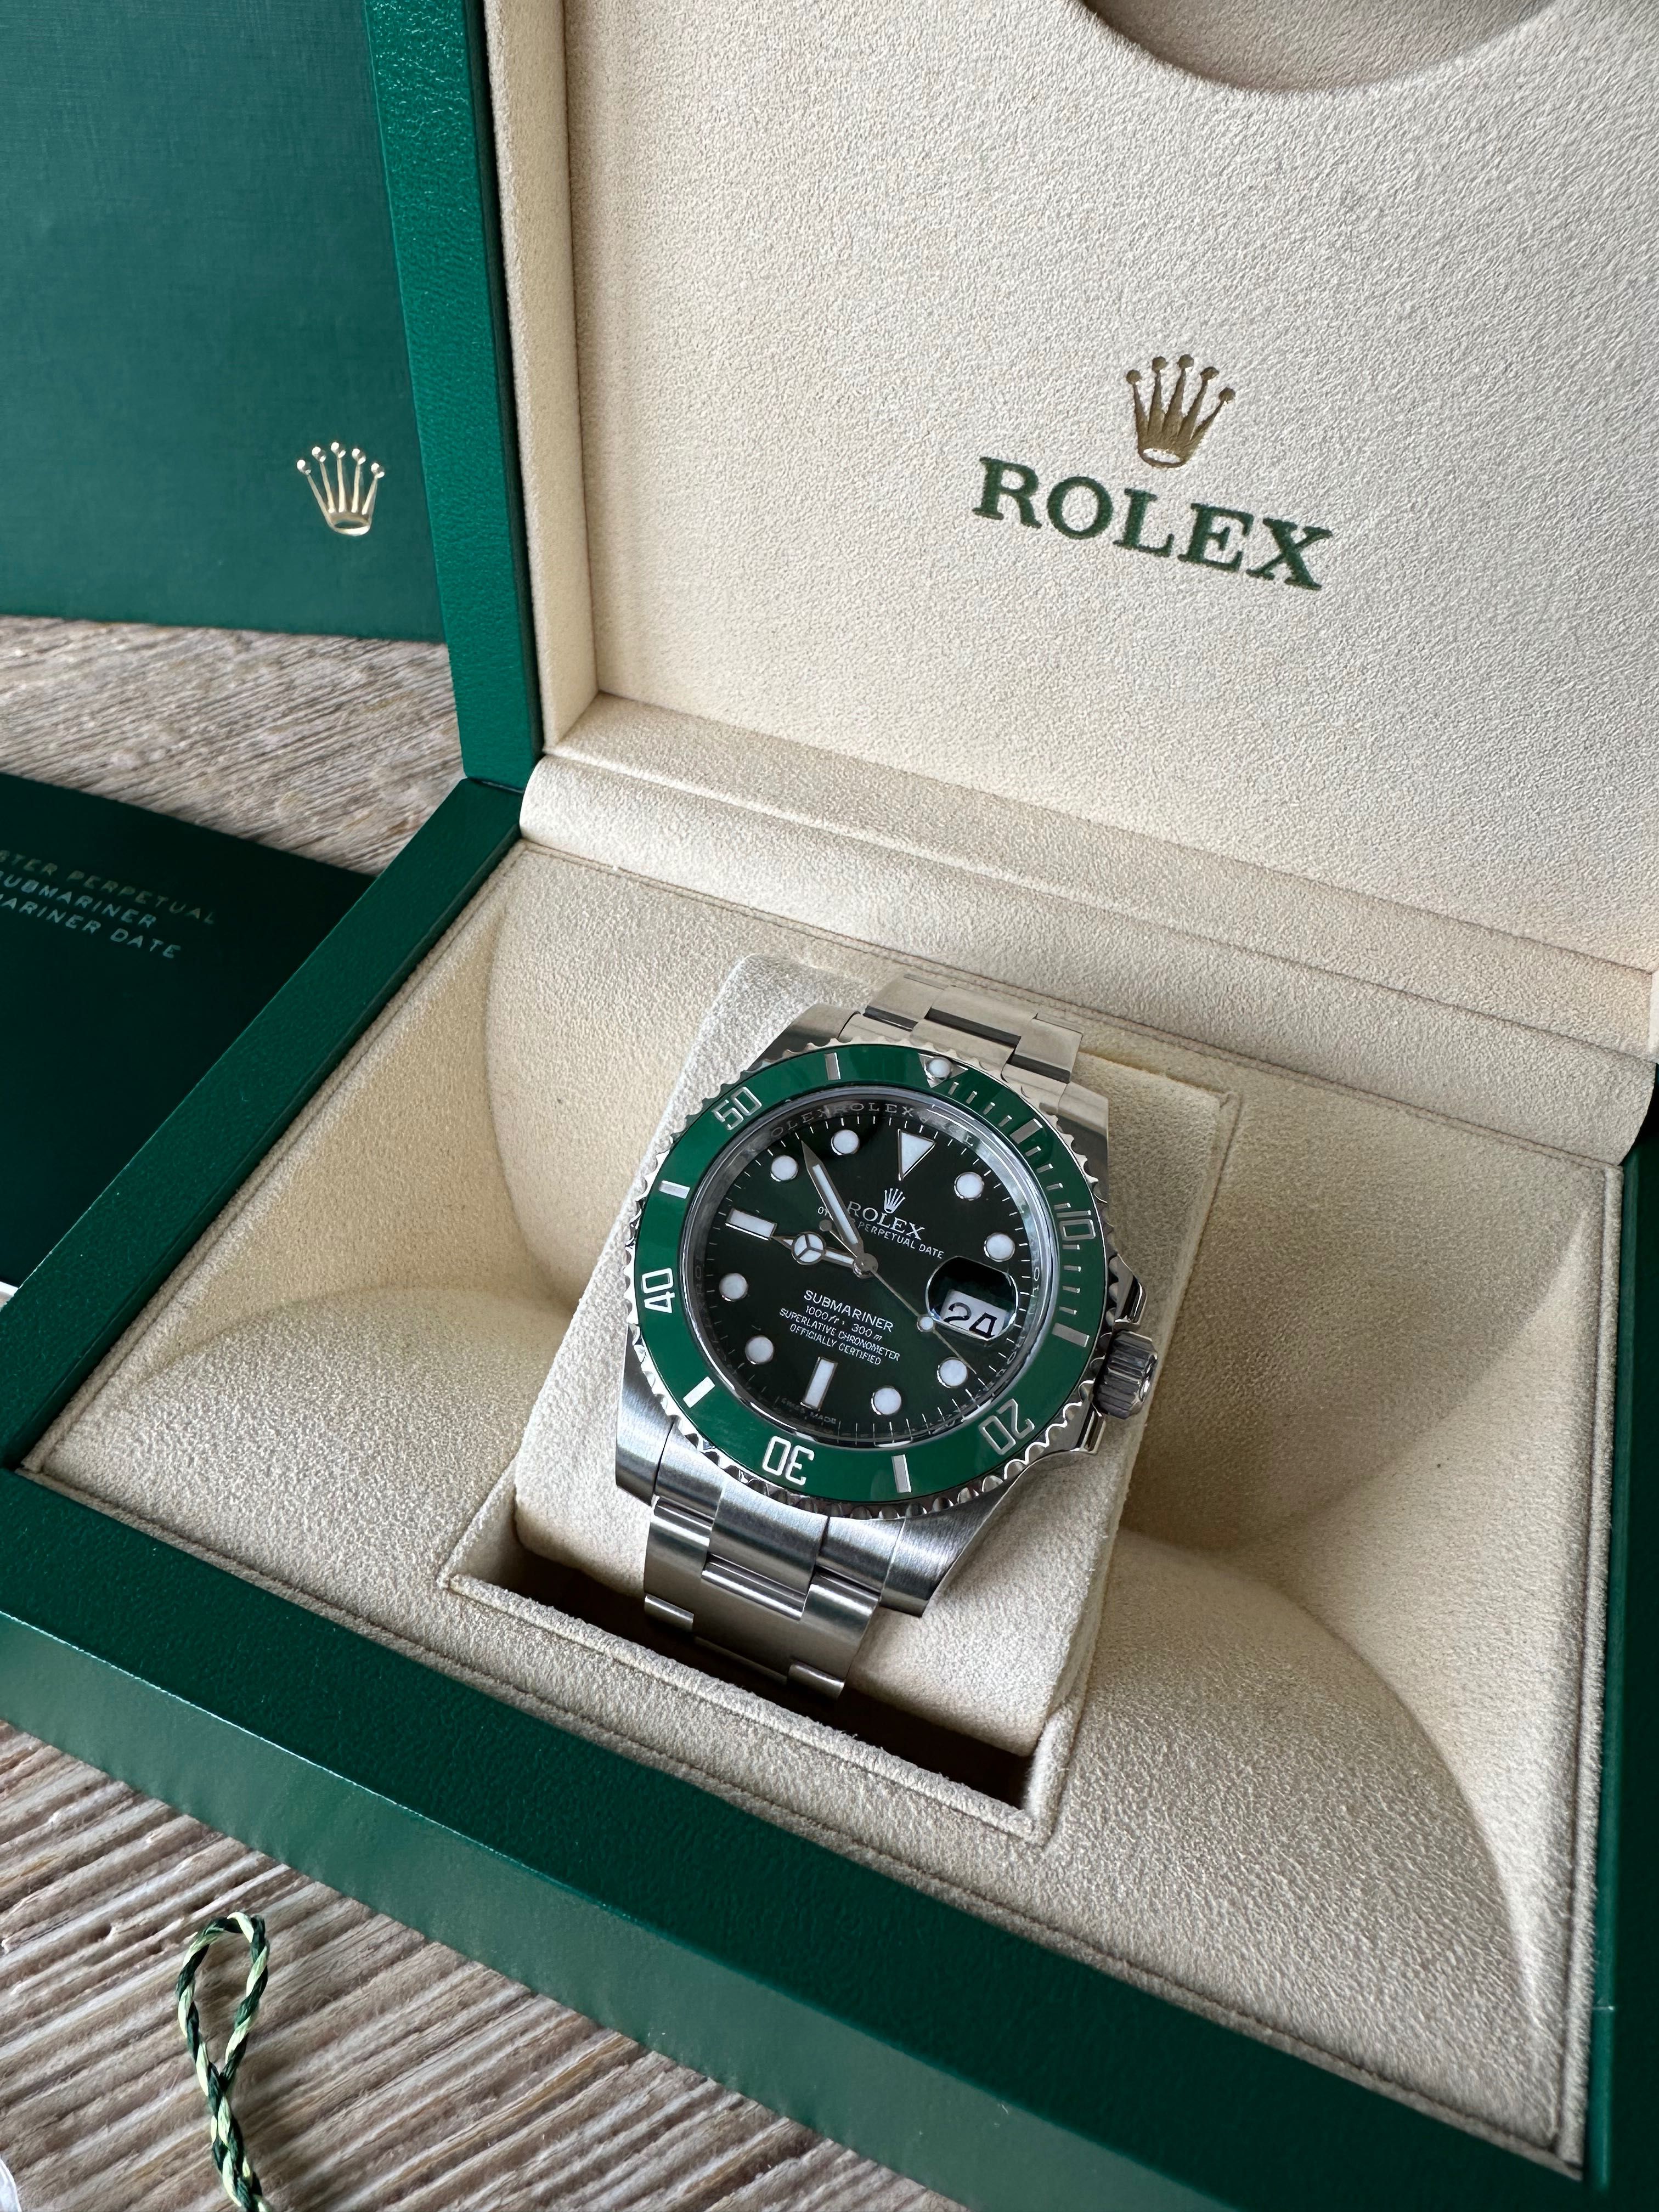 Rolex Submariner Date
ref. 116610LV Hulk